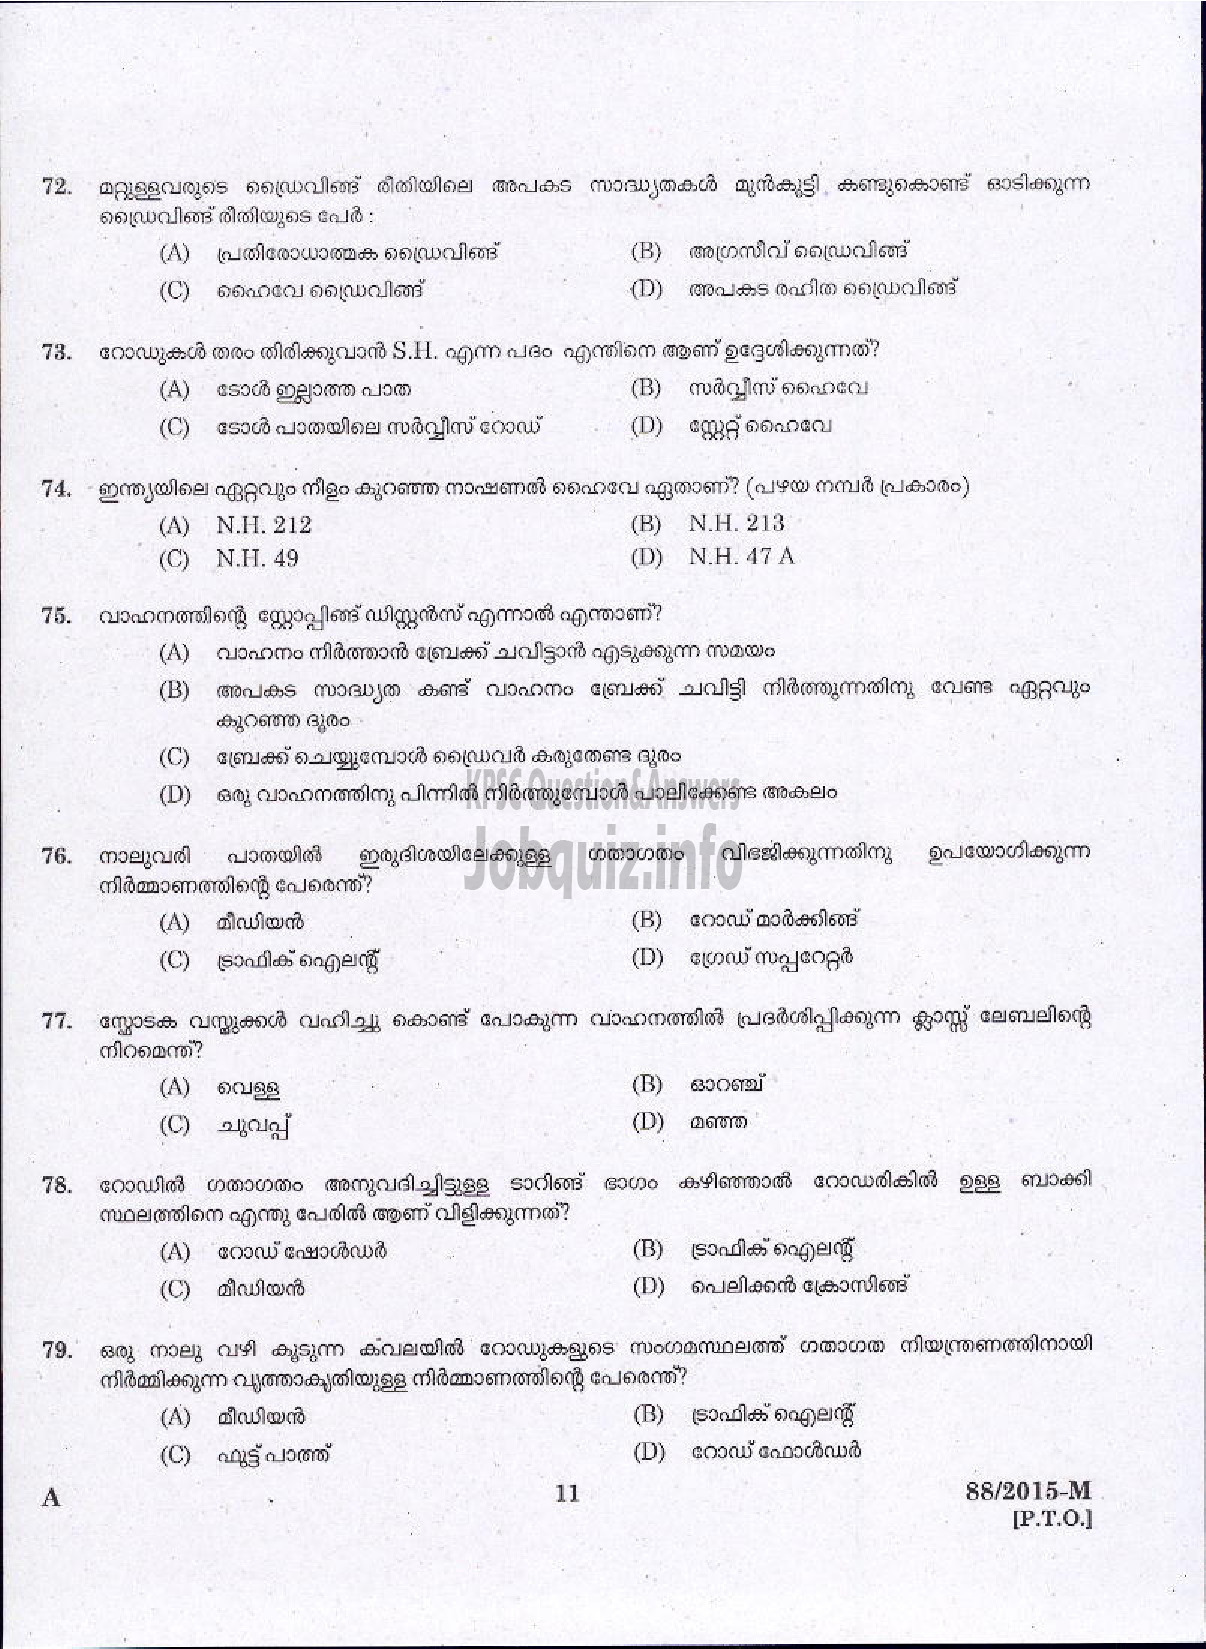 Kerala PSC Question Paper - DRIVER GRADE II LDV VARIOUS / DRIVER GR II / DRIVER LDV VARIOUS COMPANIES / CORPORATIONS-9